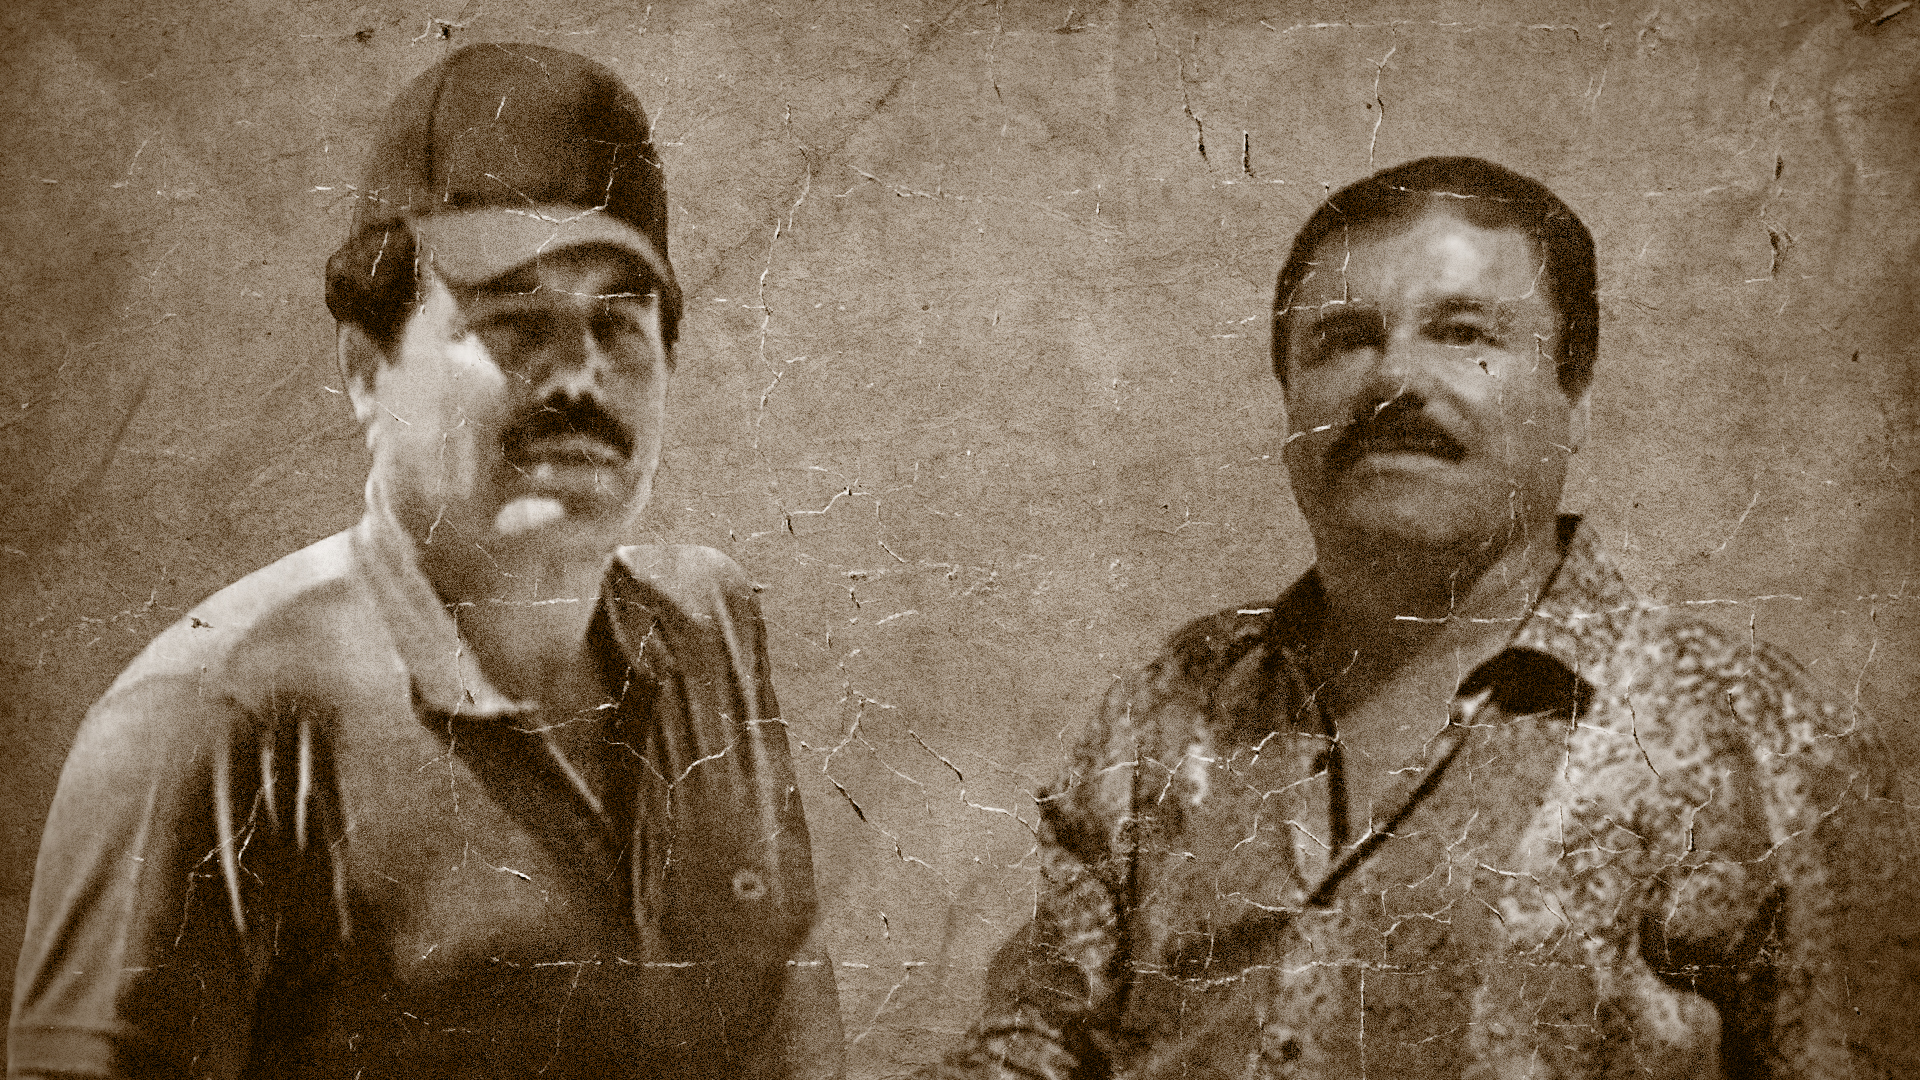  Los fundadores del Cártel de Sinaloa han sido fuente de inspiración para múltiples narcocorridos (Steve Allen)